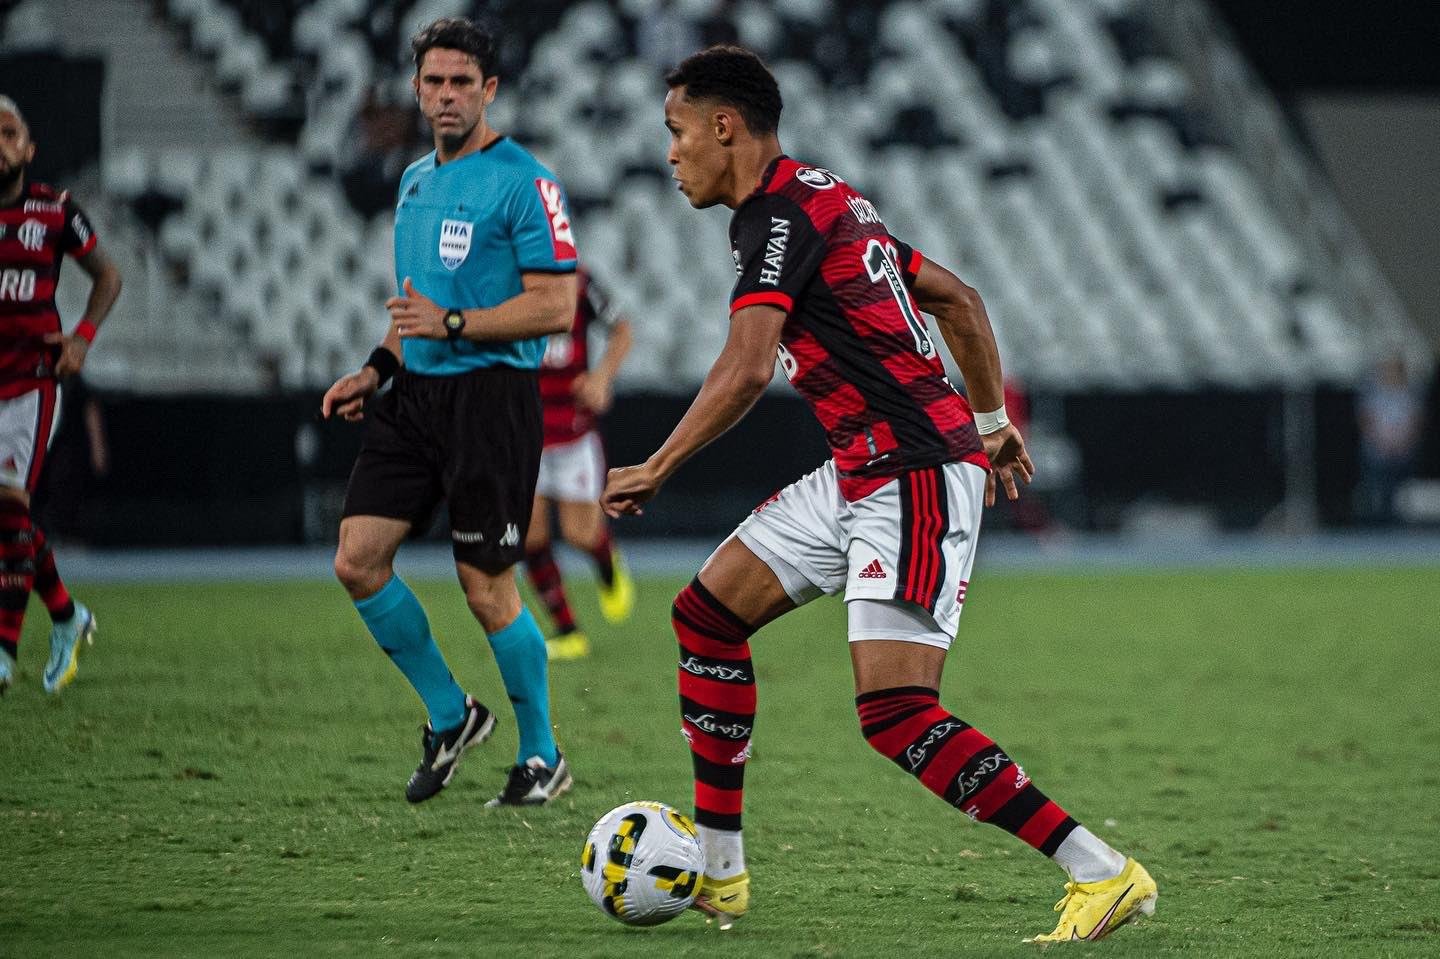 O Flamengo vive uma boa fase nas competições que o clube disputa